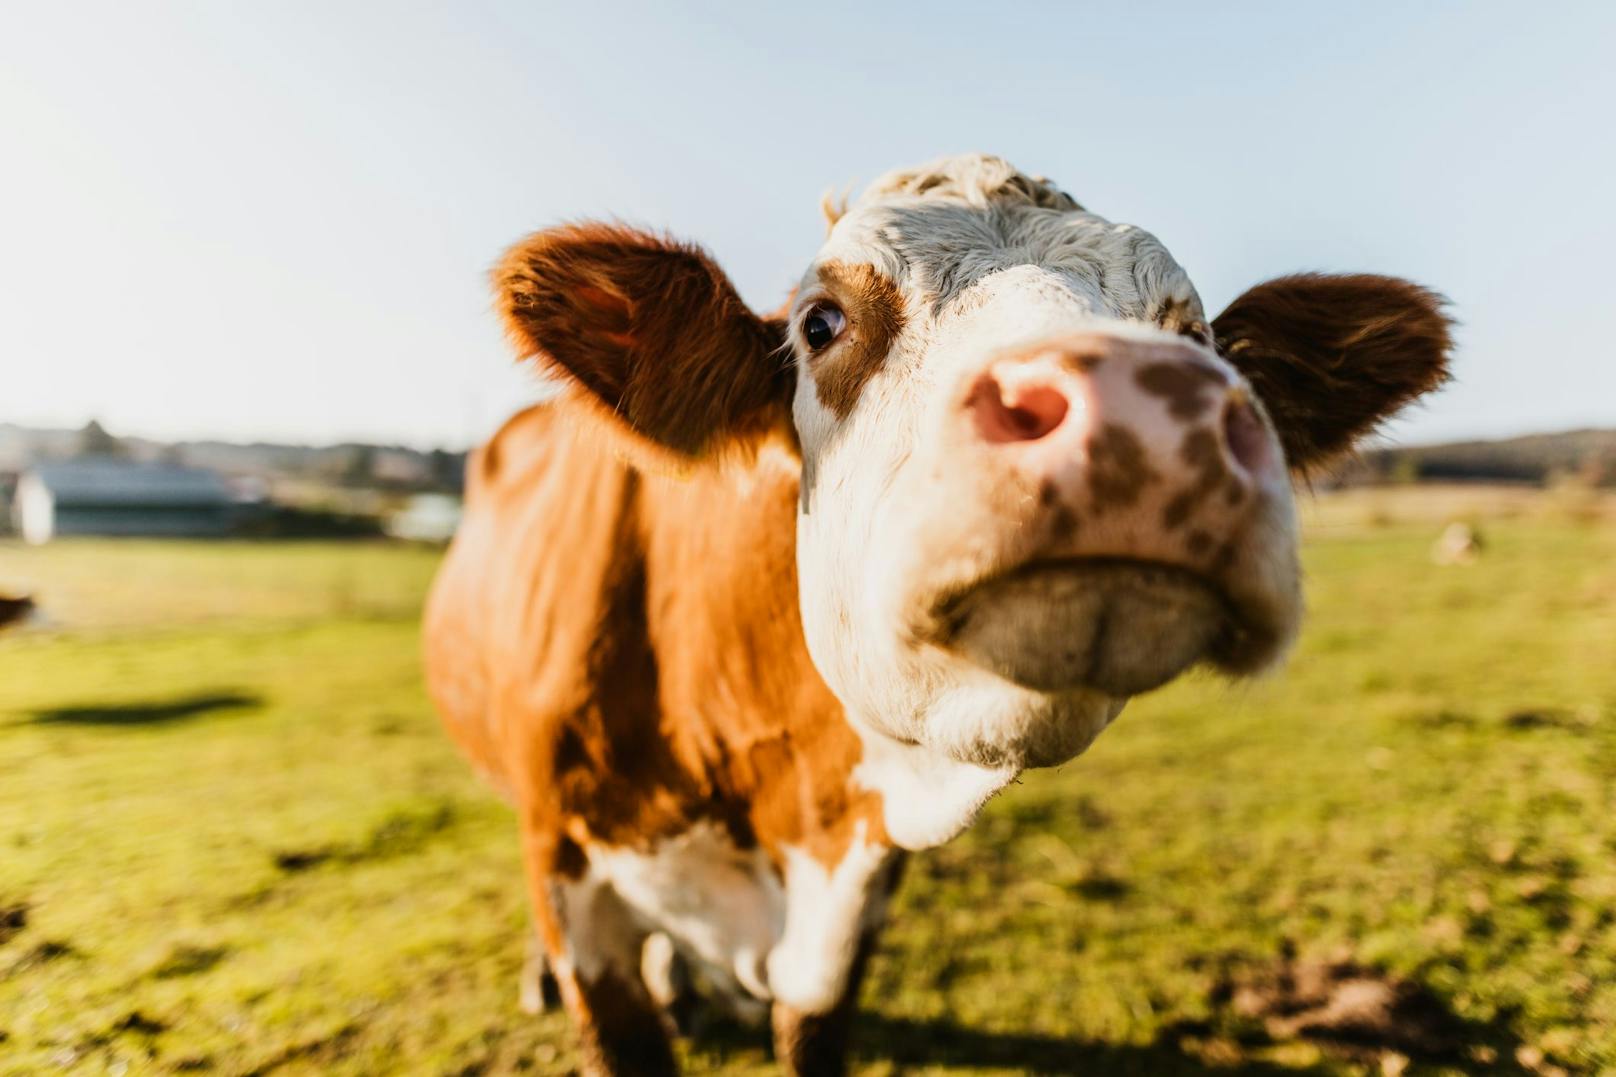 In Irland überlegt man bis 2025 tausende Kühe zu töten um das Klimaziel zu erreichen.